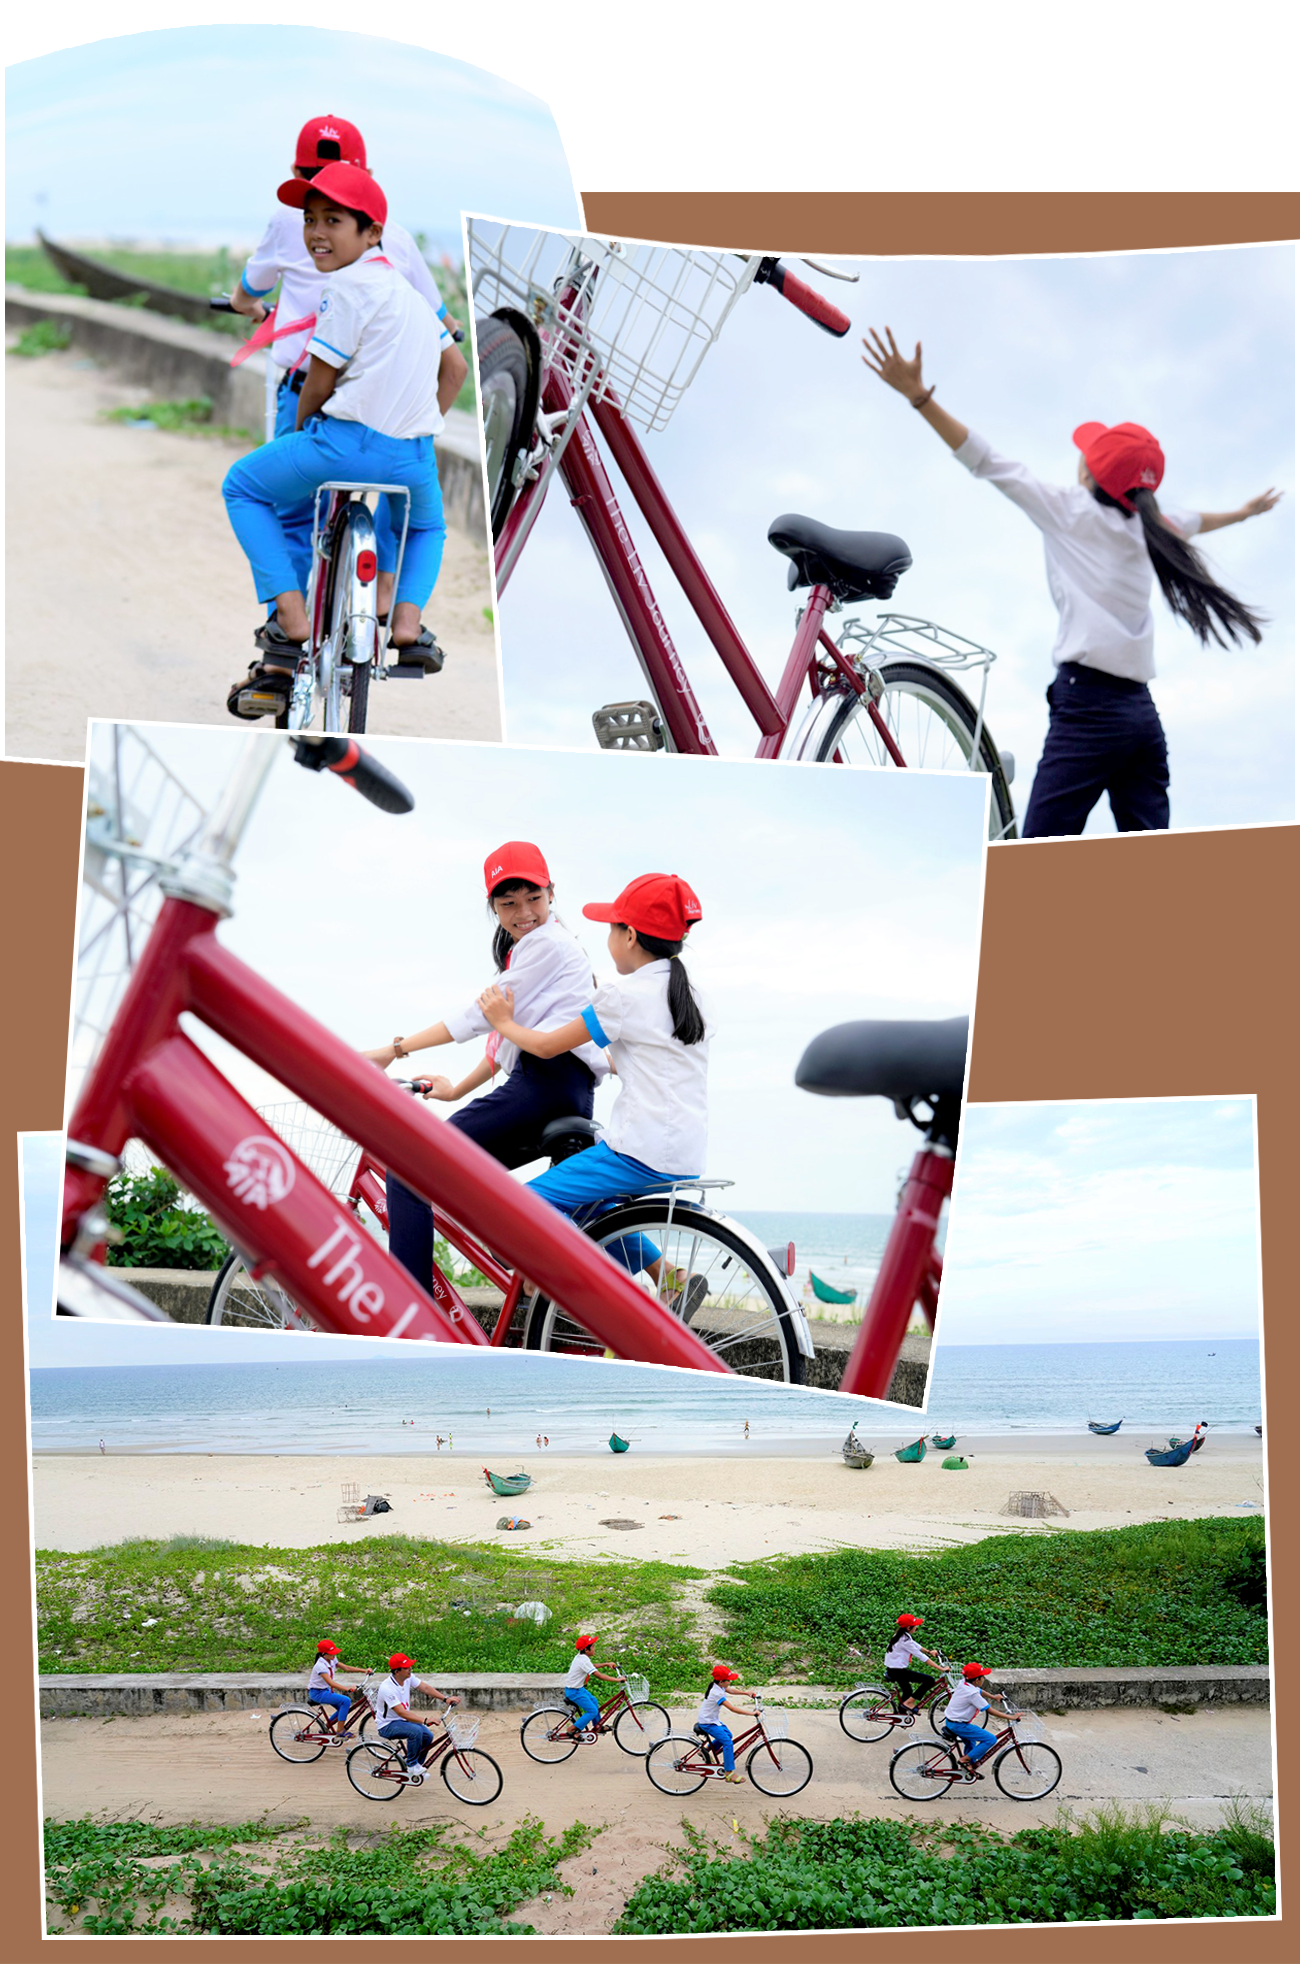 Niềm vui của trẻ em khi nhận xe đạp. Ảnh: Q.L